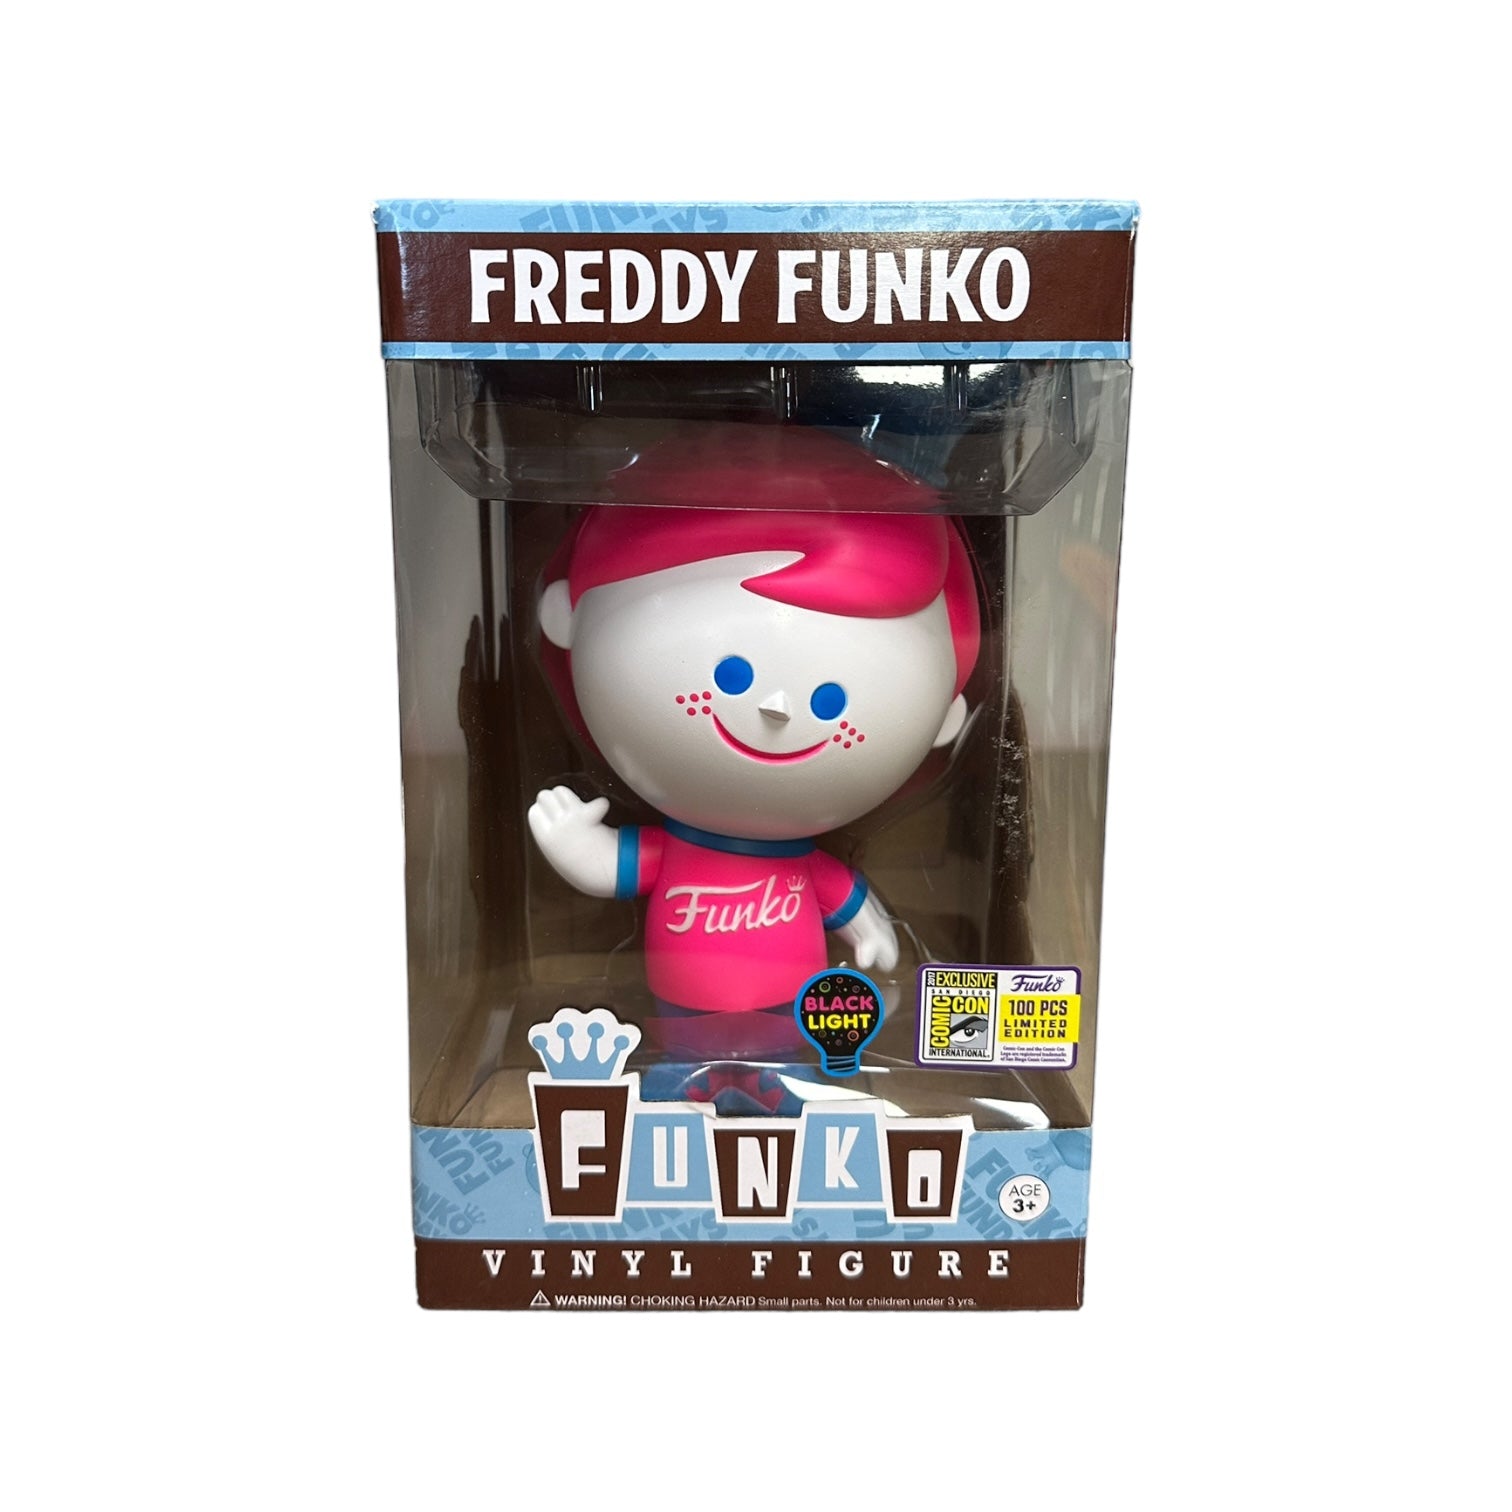 Freddy Funko Black Light (White & Pink) Funko Retro Vinyl Figure! - SDCC 2017 Exclusive LE100 Pcs - Condition 8/10